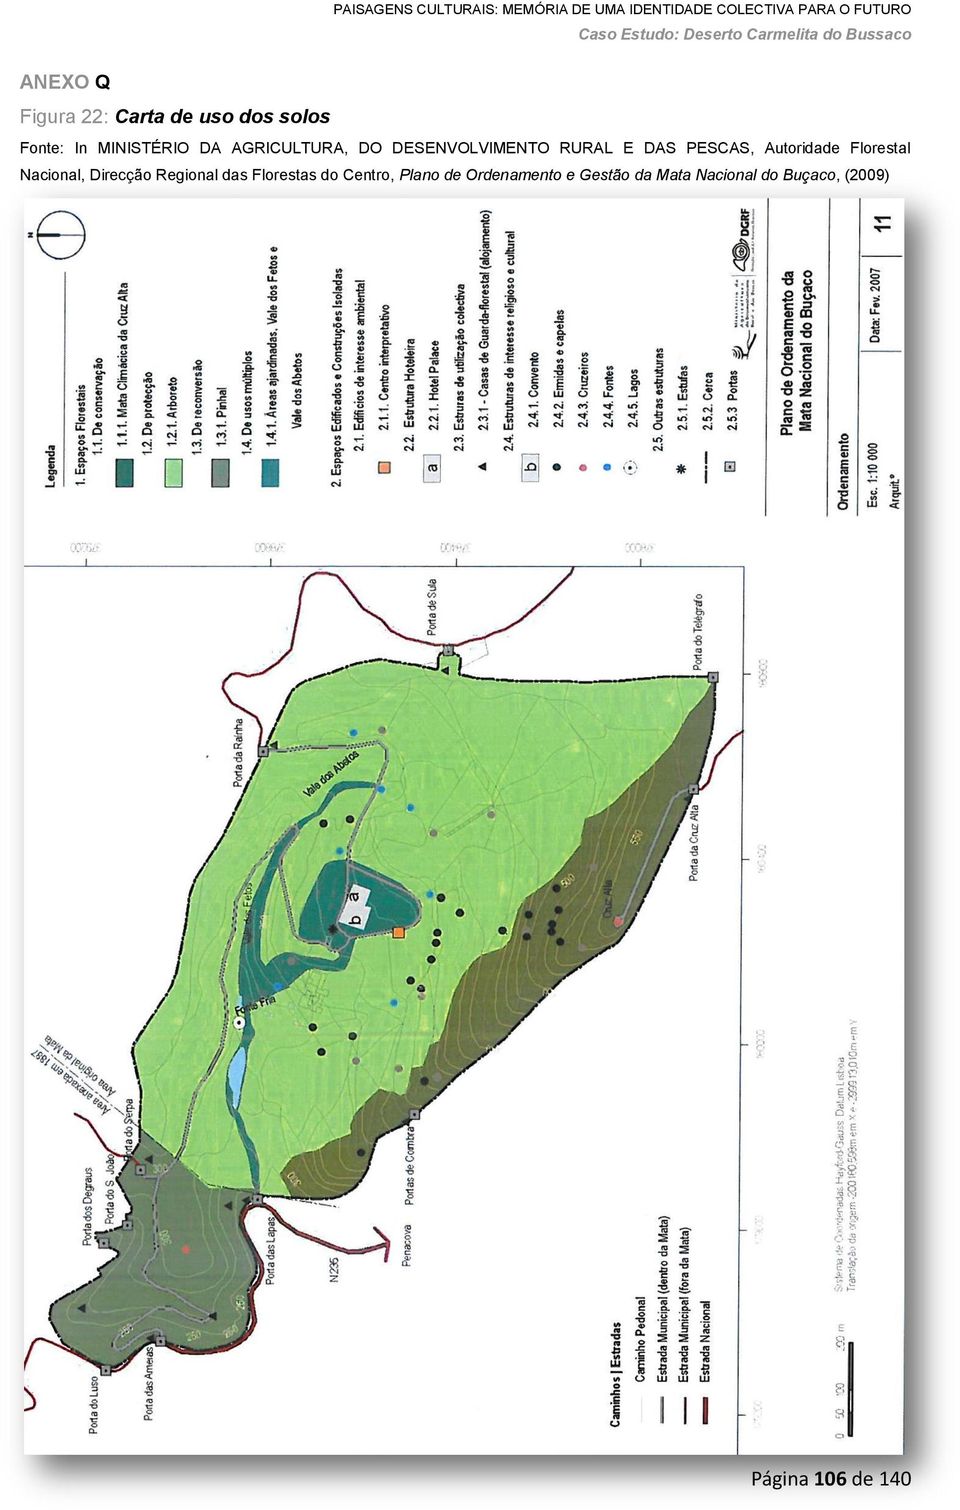 Florestal Nacional, Direcção Regional das Florestas do Centro, Plano